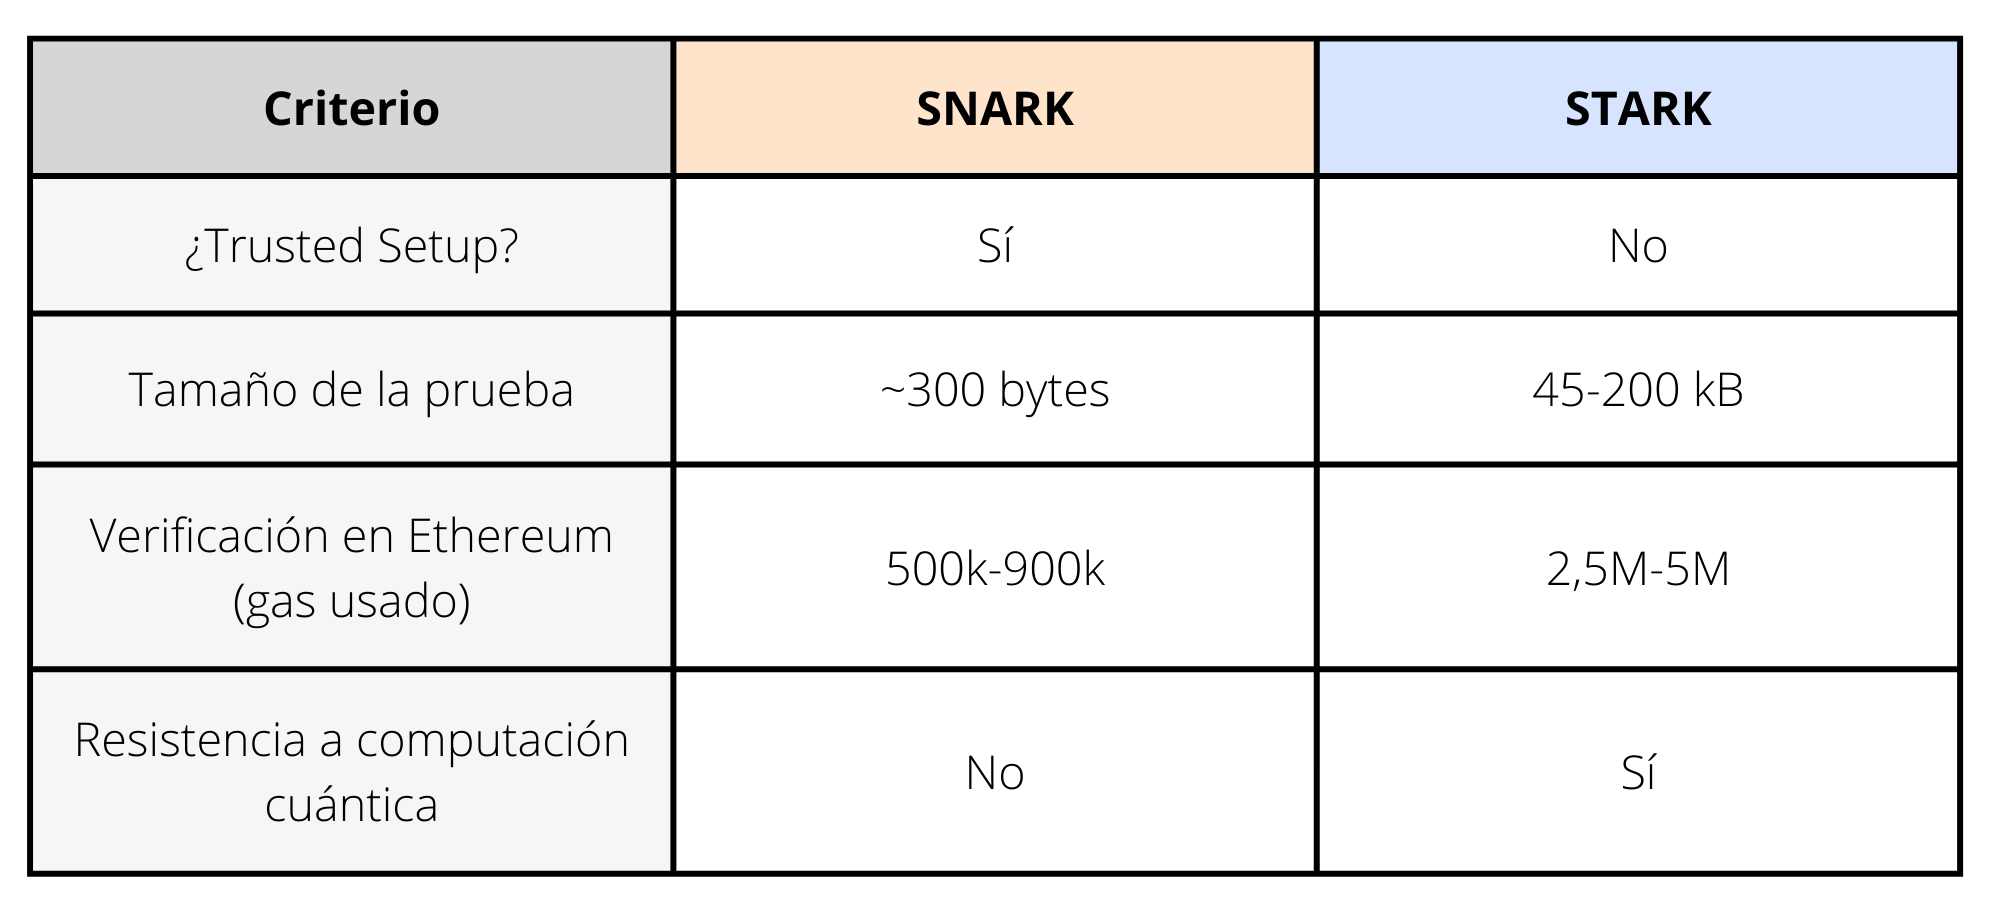 Comparación SNARK vs STARK en sus formas más básicas.